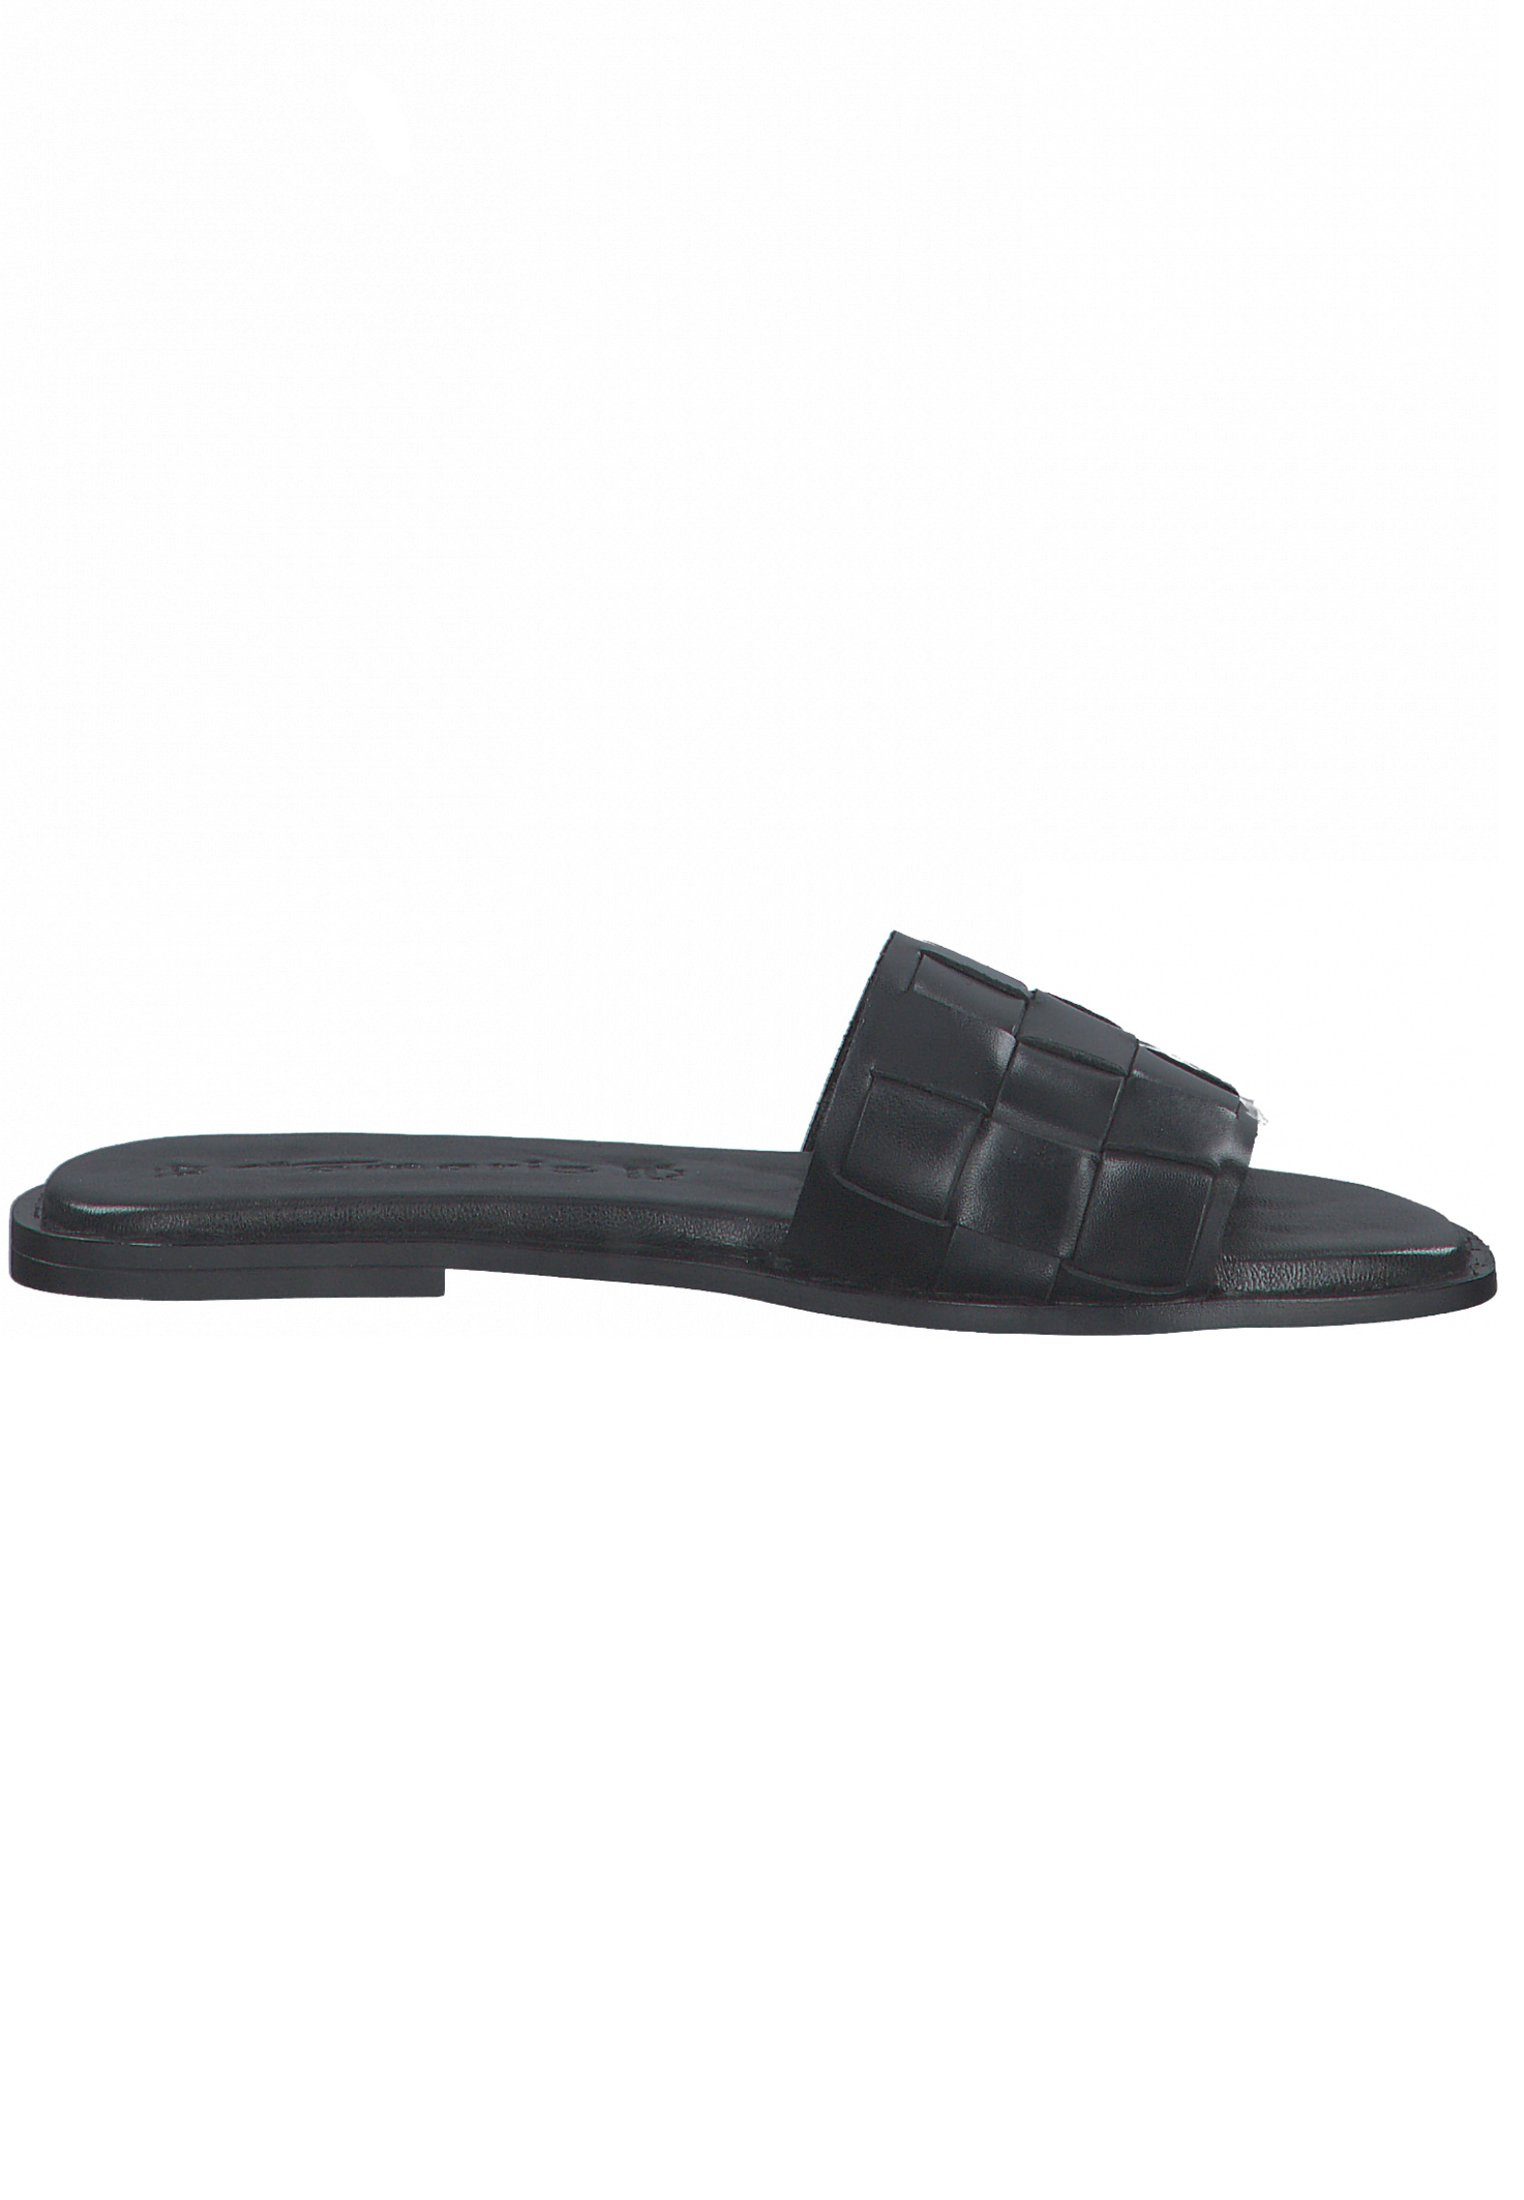 Sandale Leather 003 Black Tamaris 1-27122-28